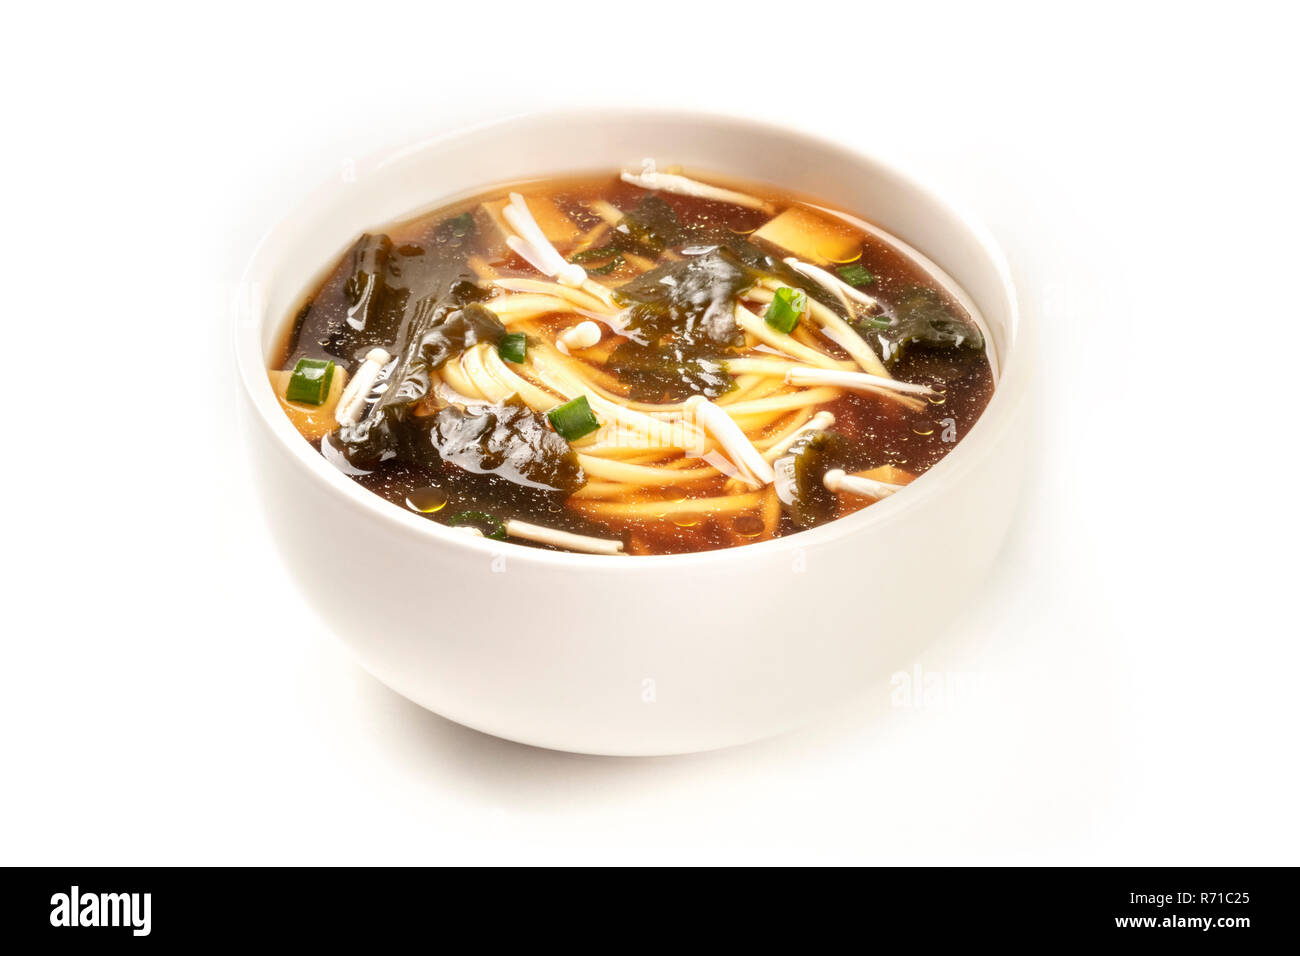 Une photo d'un bol de soupe miso avec le tofu, les oignons verts, les nouilles, les champignons Enoki, wakame et, sur un fond blanc avec une place pour le texte Banque D'Images